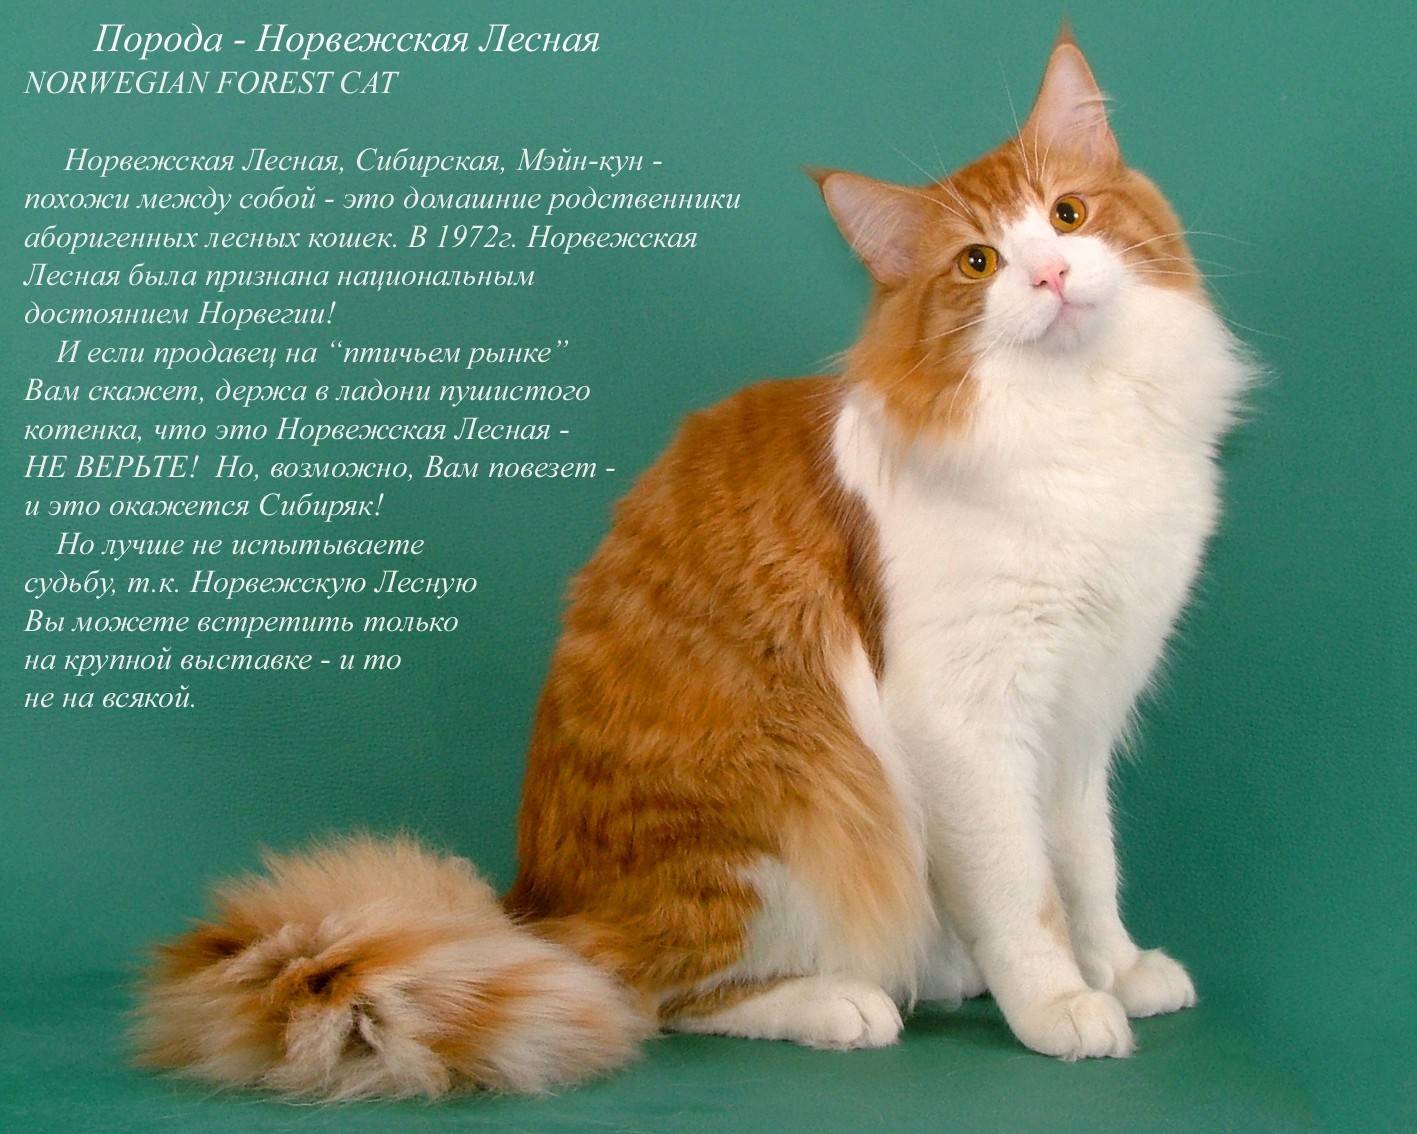 Как определить породу кошки - энциклопедия про кошек и собак